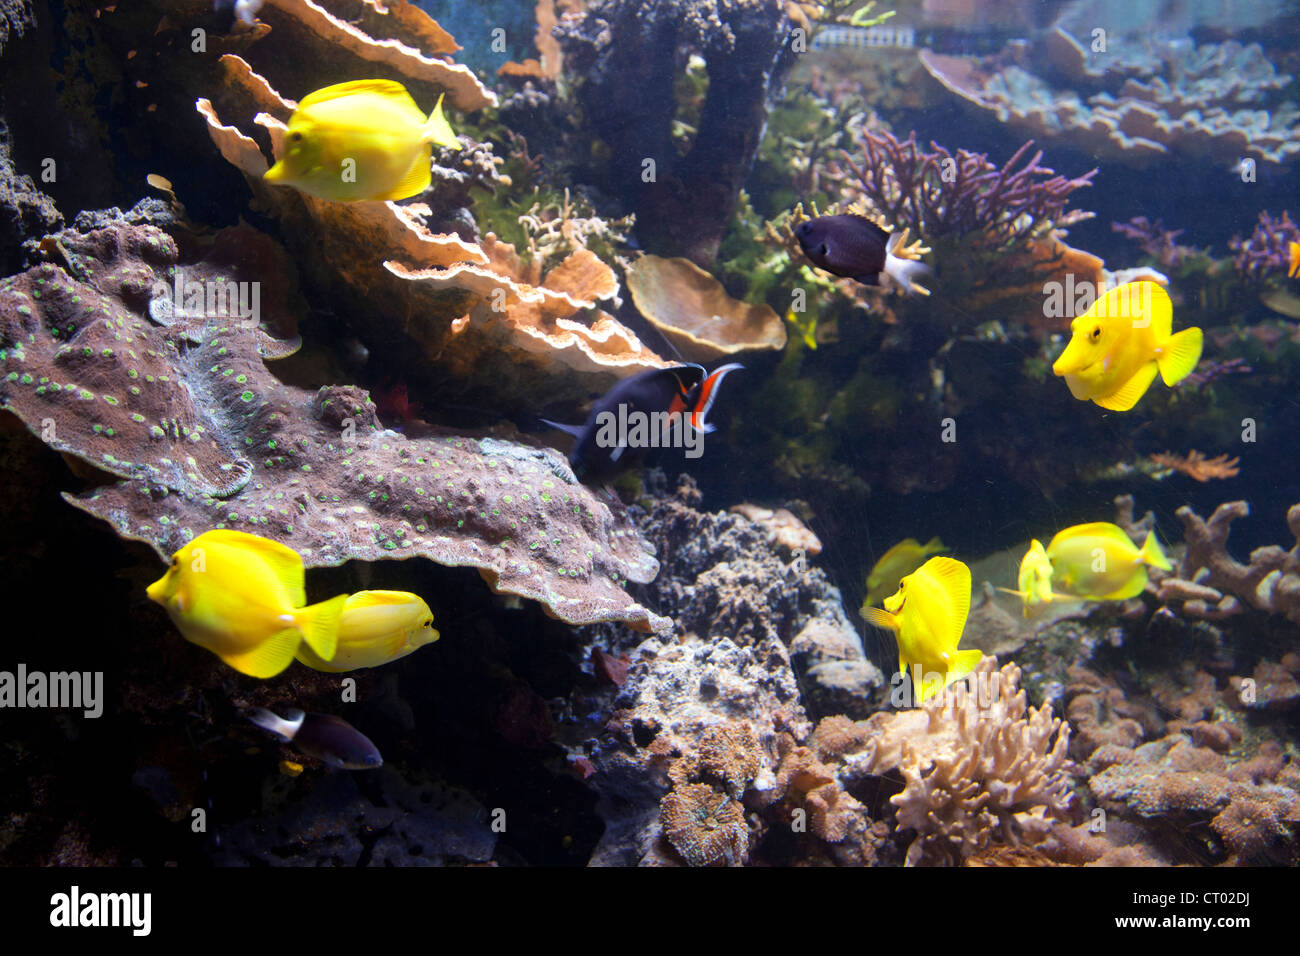 London Aquarium tank - UK Stock Photo